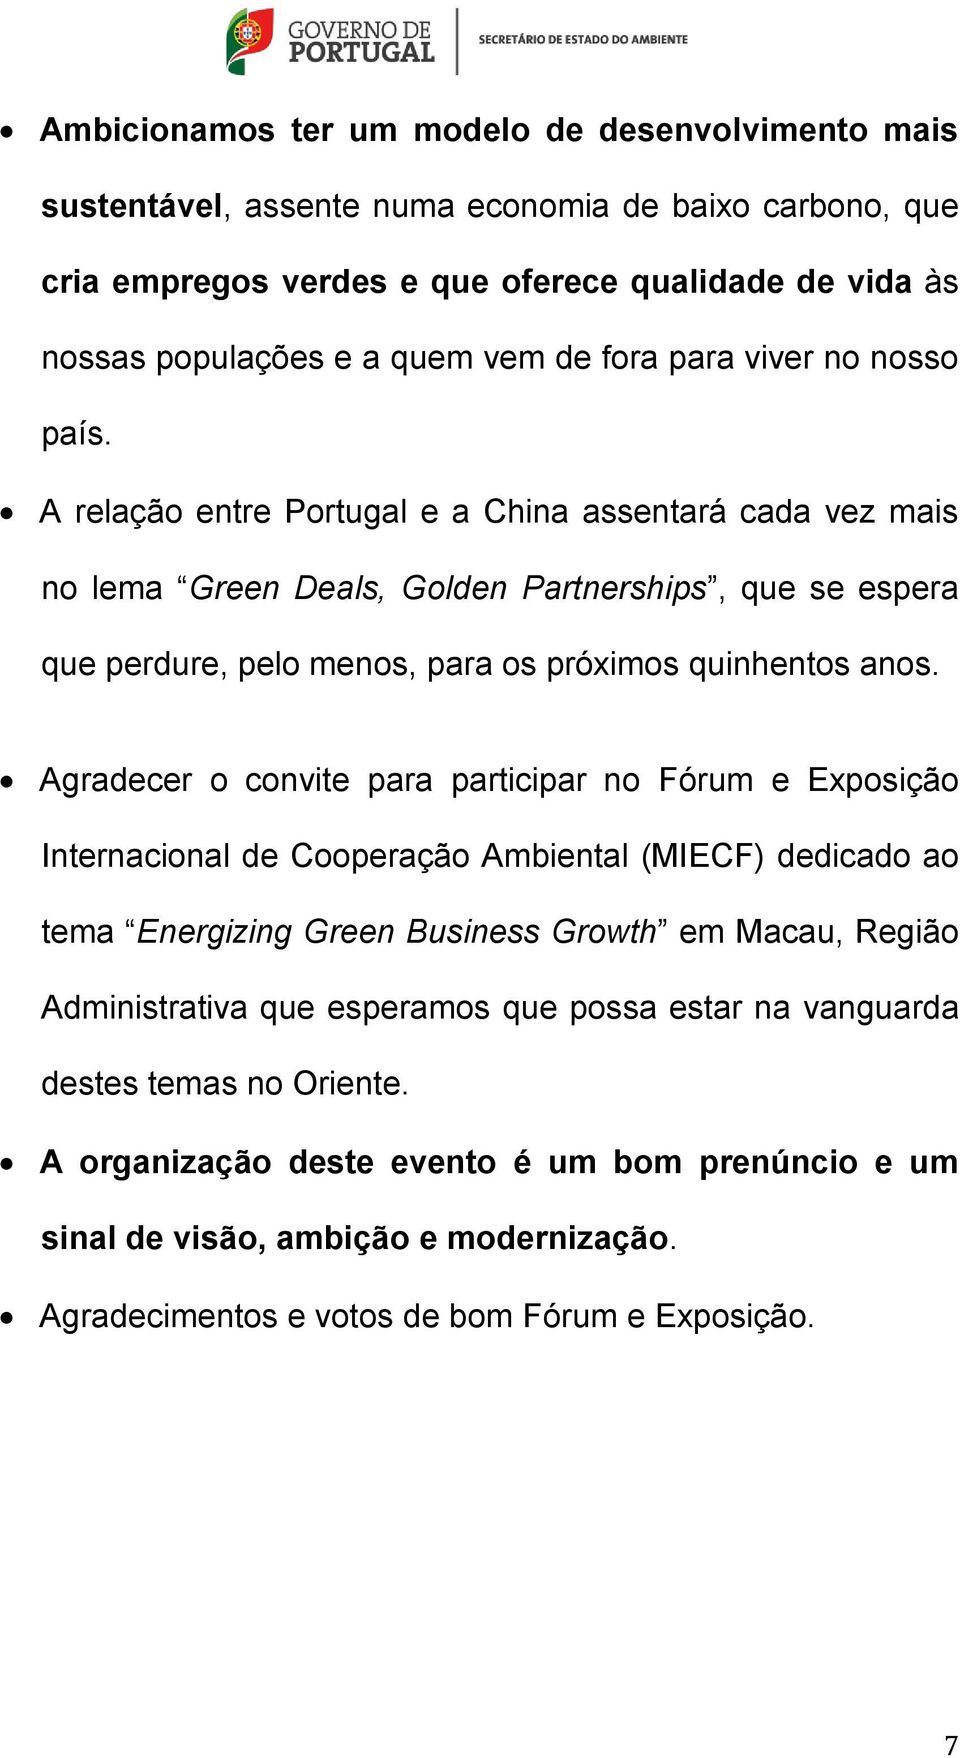 A relação entre Portugal e a China assentará cada vez mais no lema Green Deals, Golden Partnerships, que se espera que perdure, pelo menos, para os próximos quinhentos anos.